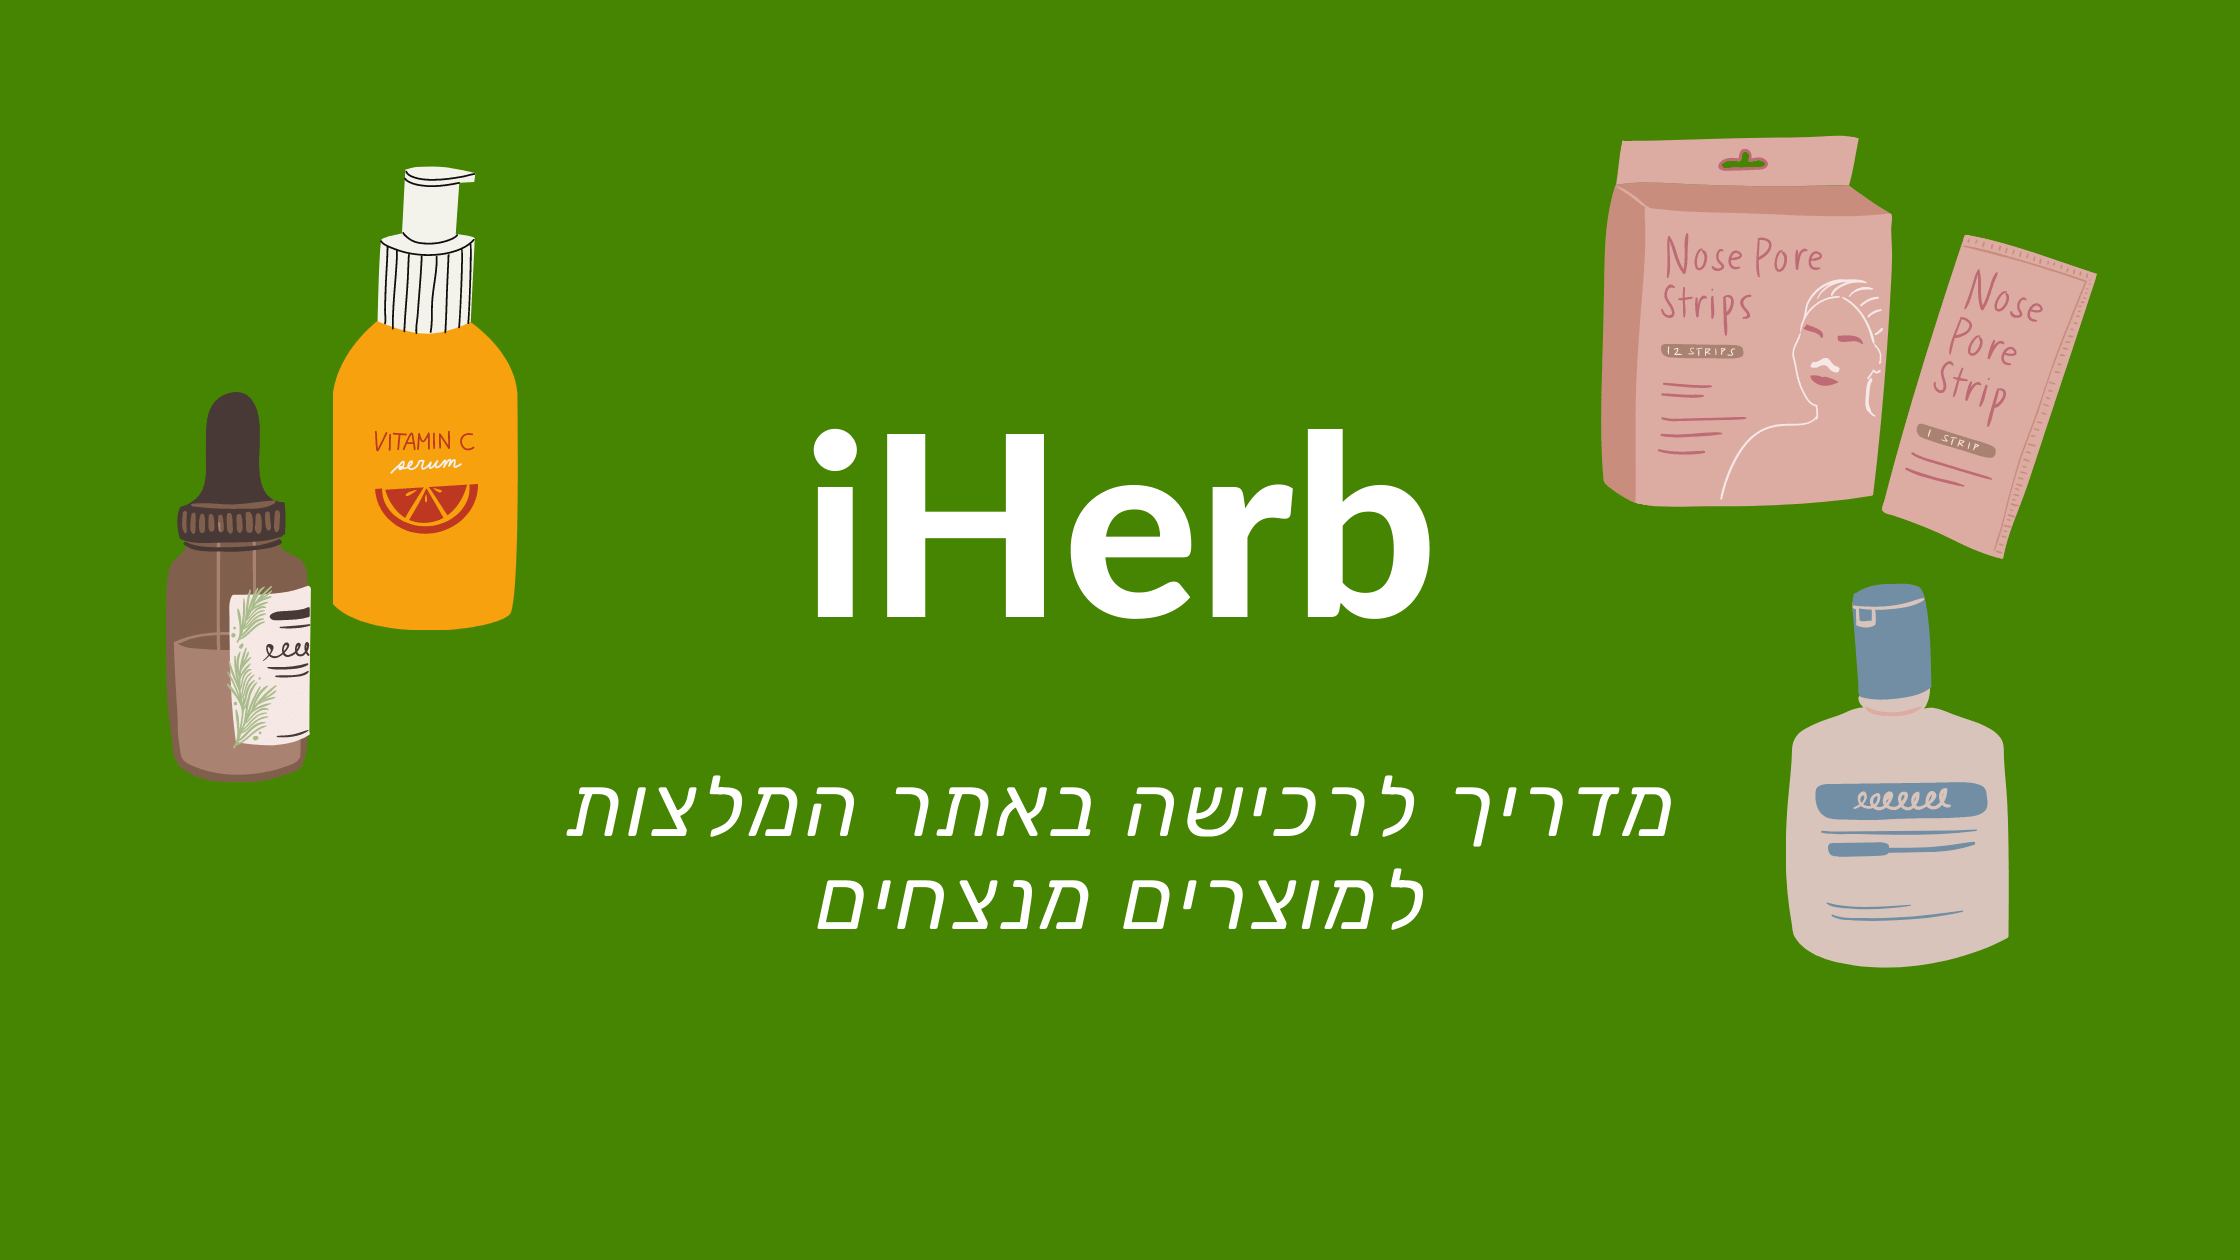 IHERB